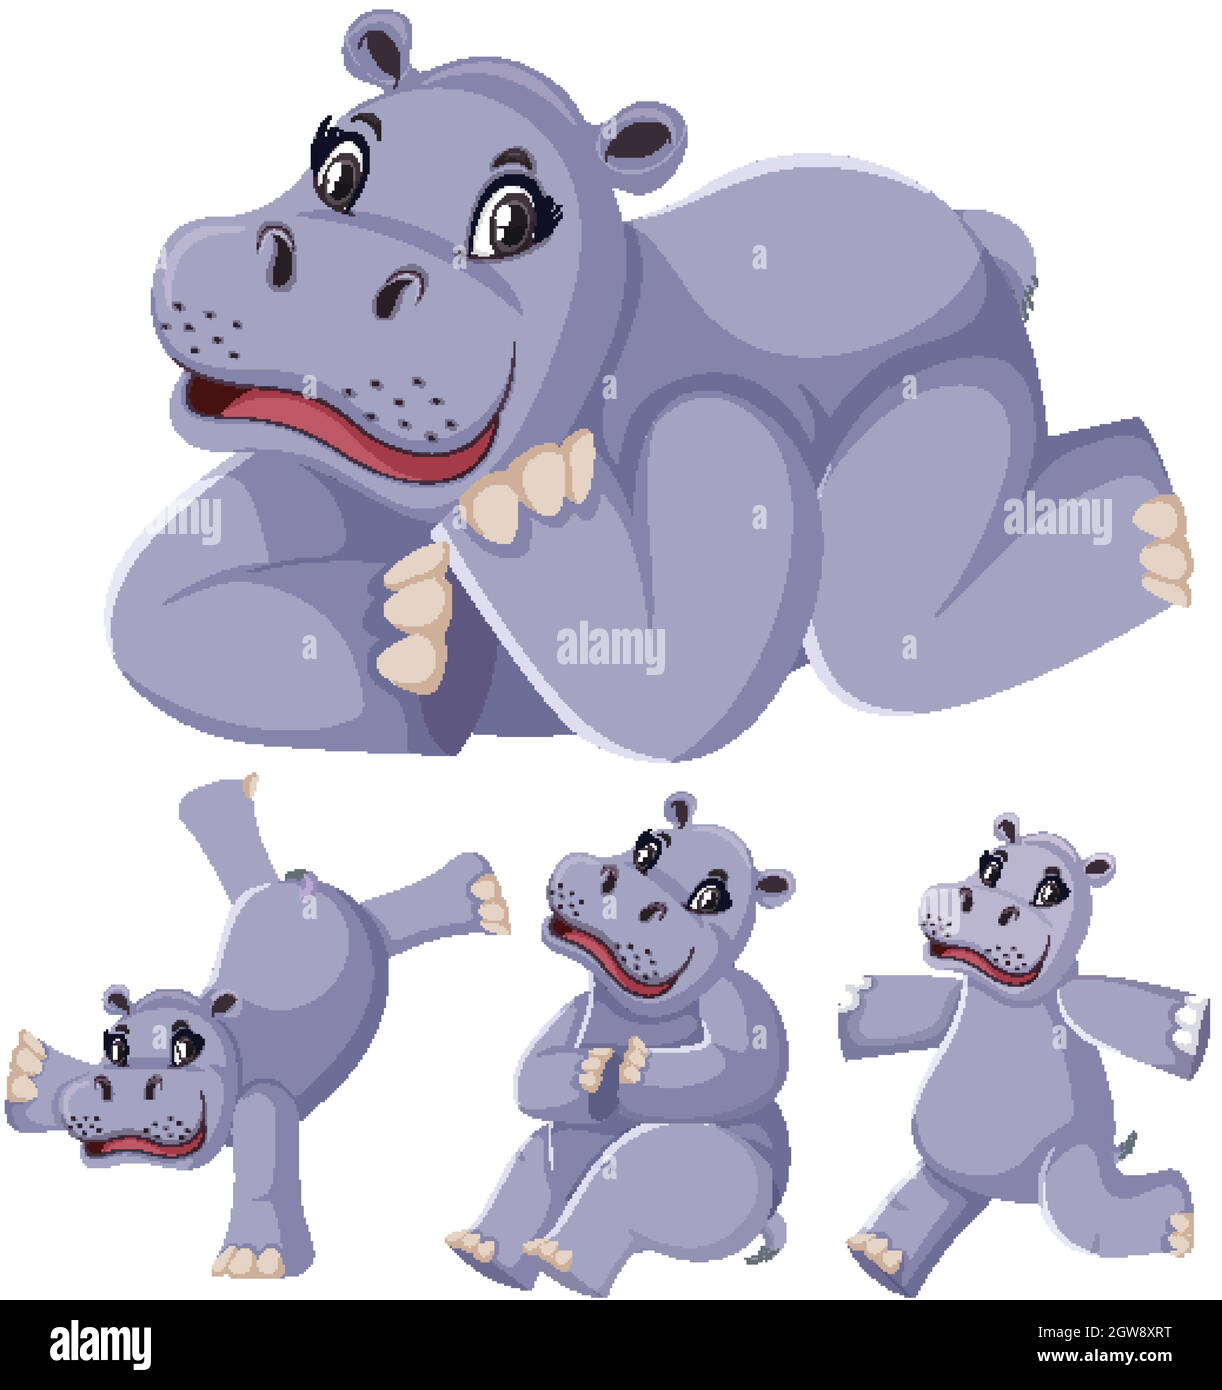 Set of hippopotamus cartoon character Stock Vector